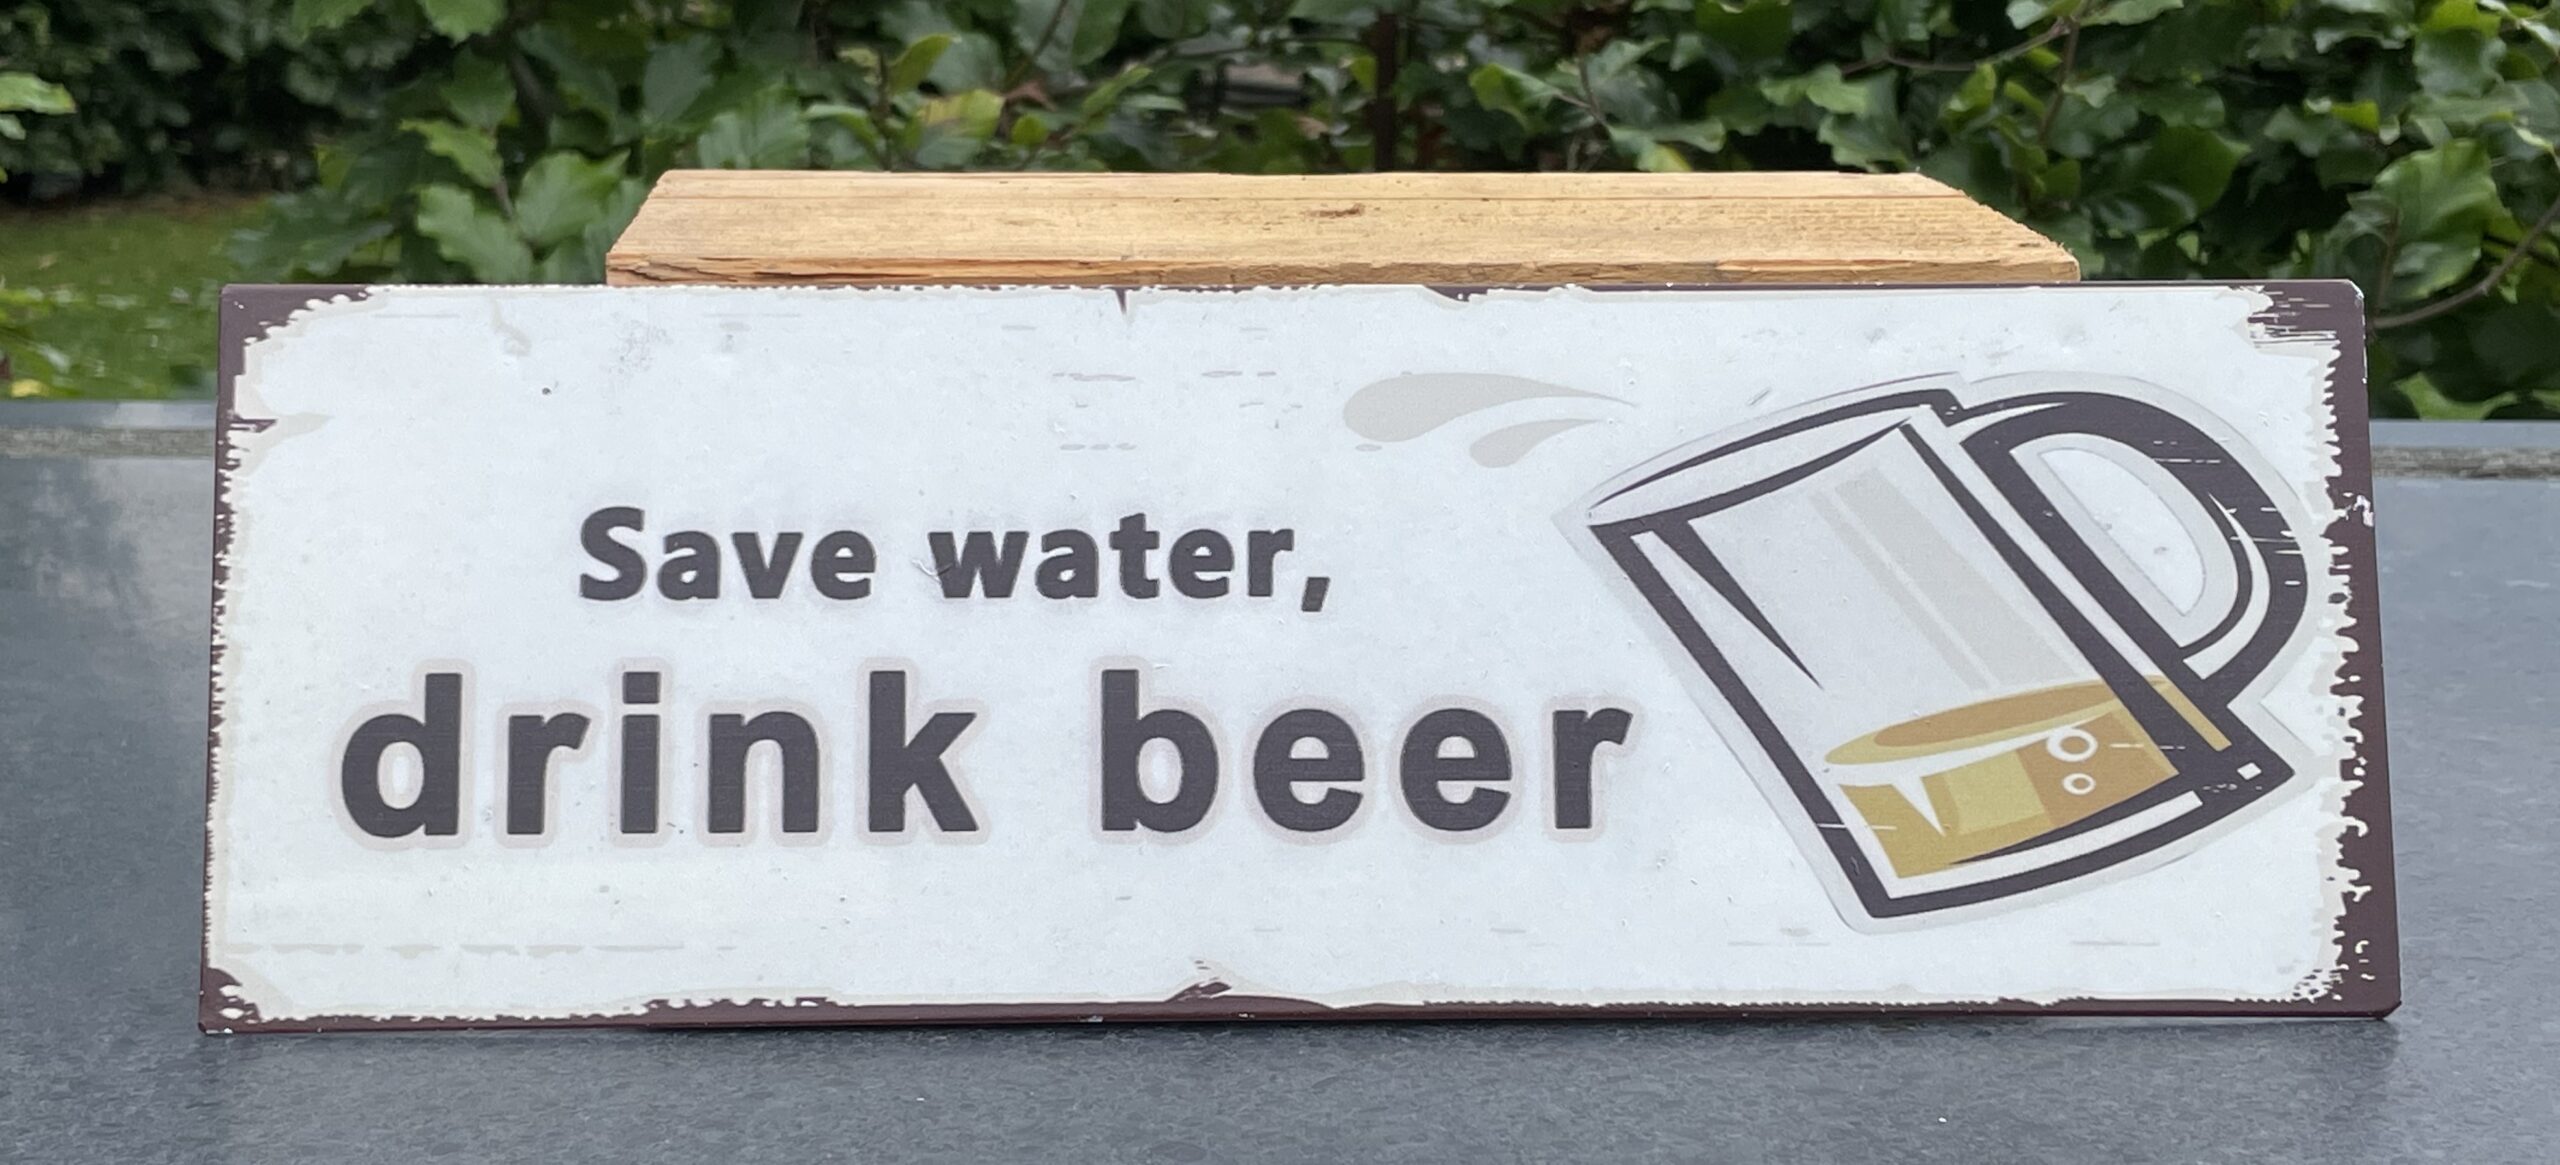 Tekstbord: Save water, drink beer